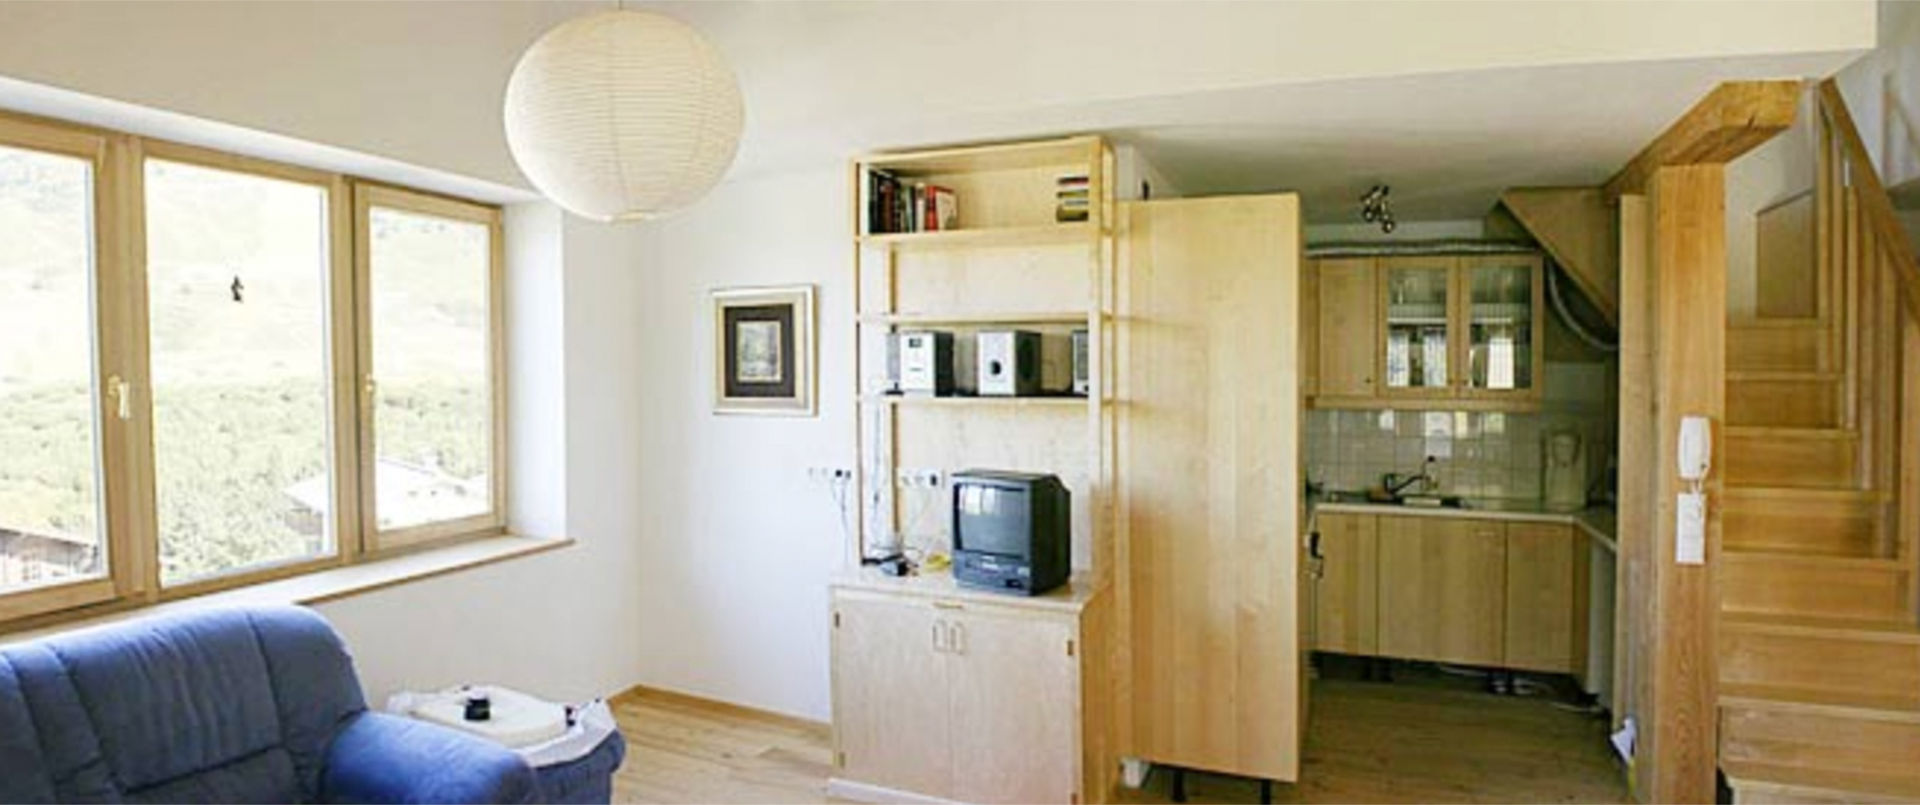 Ferienhaus Meilinger in Obertauern – Wohnung3 Wohnbereich mit Küche und Maisonetteaufgang